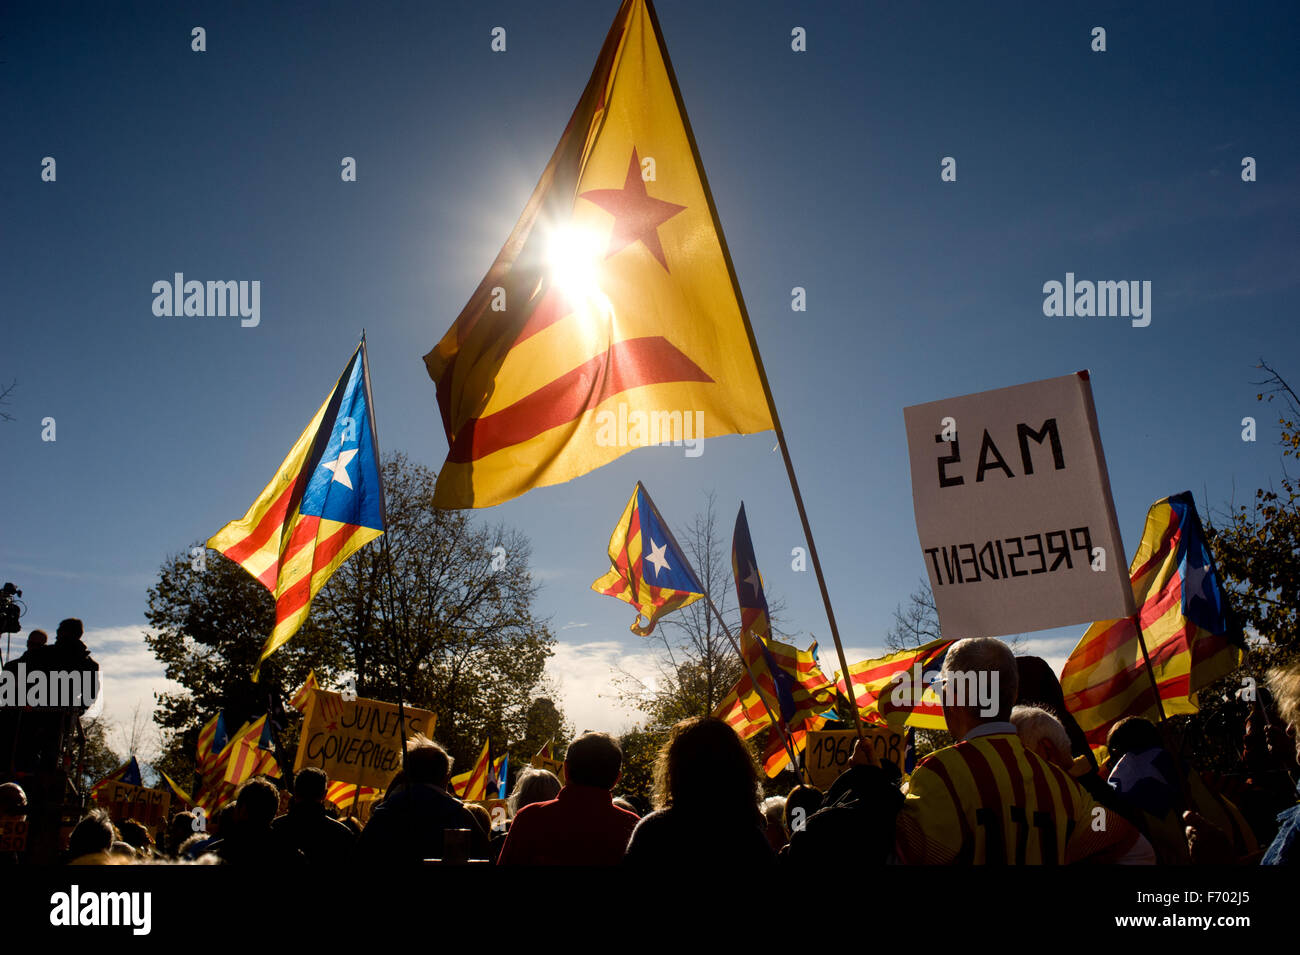 Les gens vague estelada flags (symbole de l'indépendance catalane) au Parc de la Ciutadella de Barcelone, Espagne. Banque D'Images